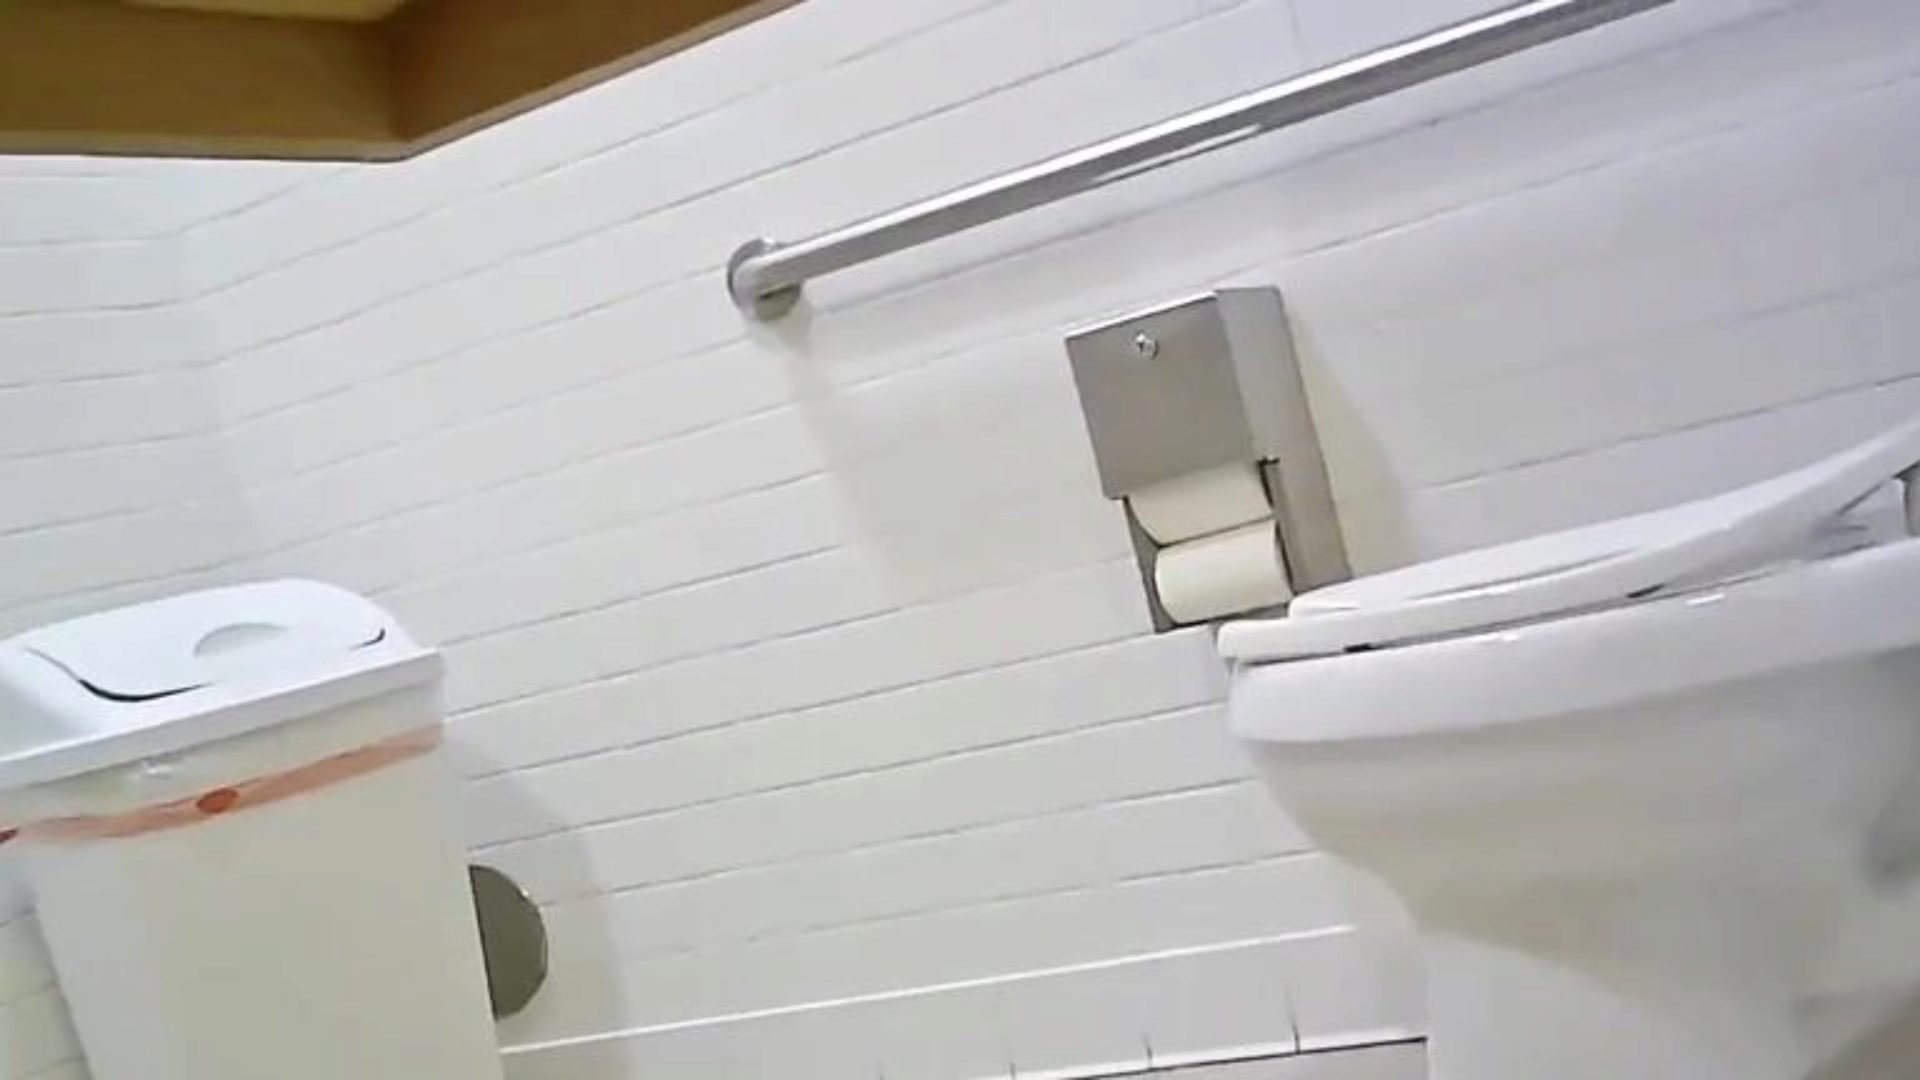 skrivena toaletna kamera - prikladna djevojka, savršena guza, pogledajte ovo, recite mi što mislite; p '